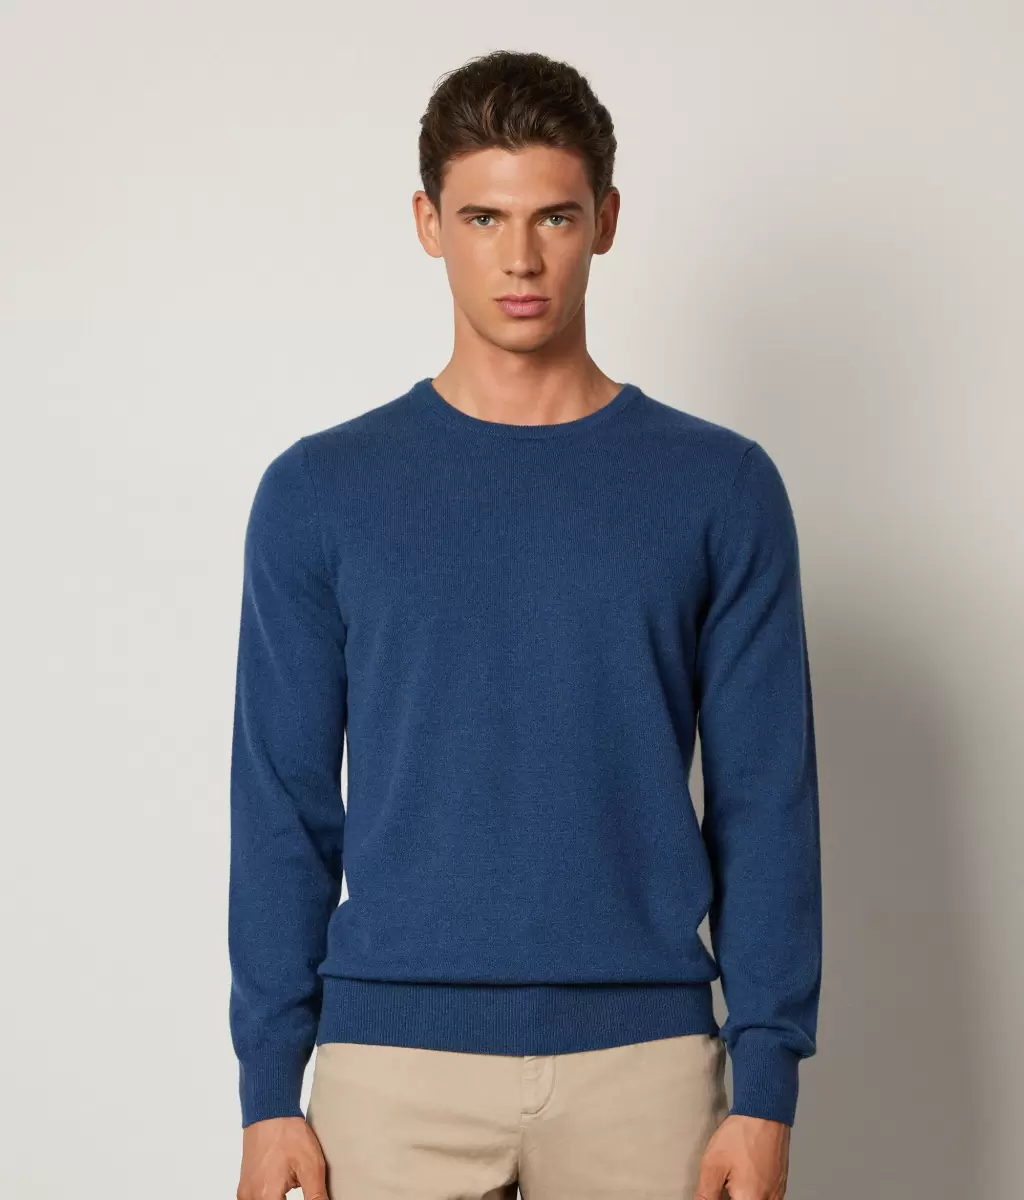 Swetry Z Okrągłym Dekoltem Mężczyzna Pulower Z Kaszmiru Ultrasoft Blue Falconeri - 1